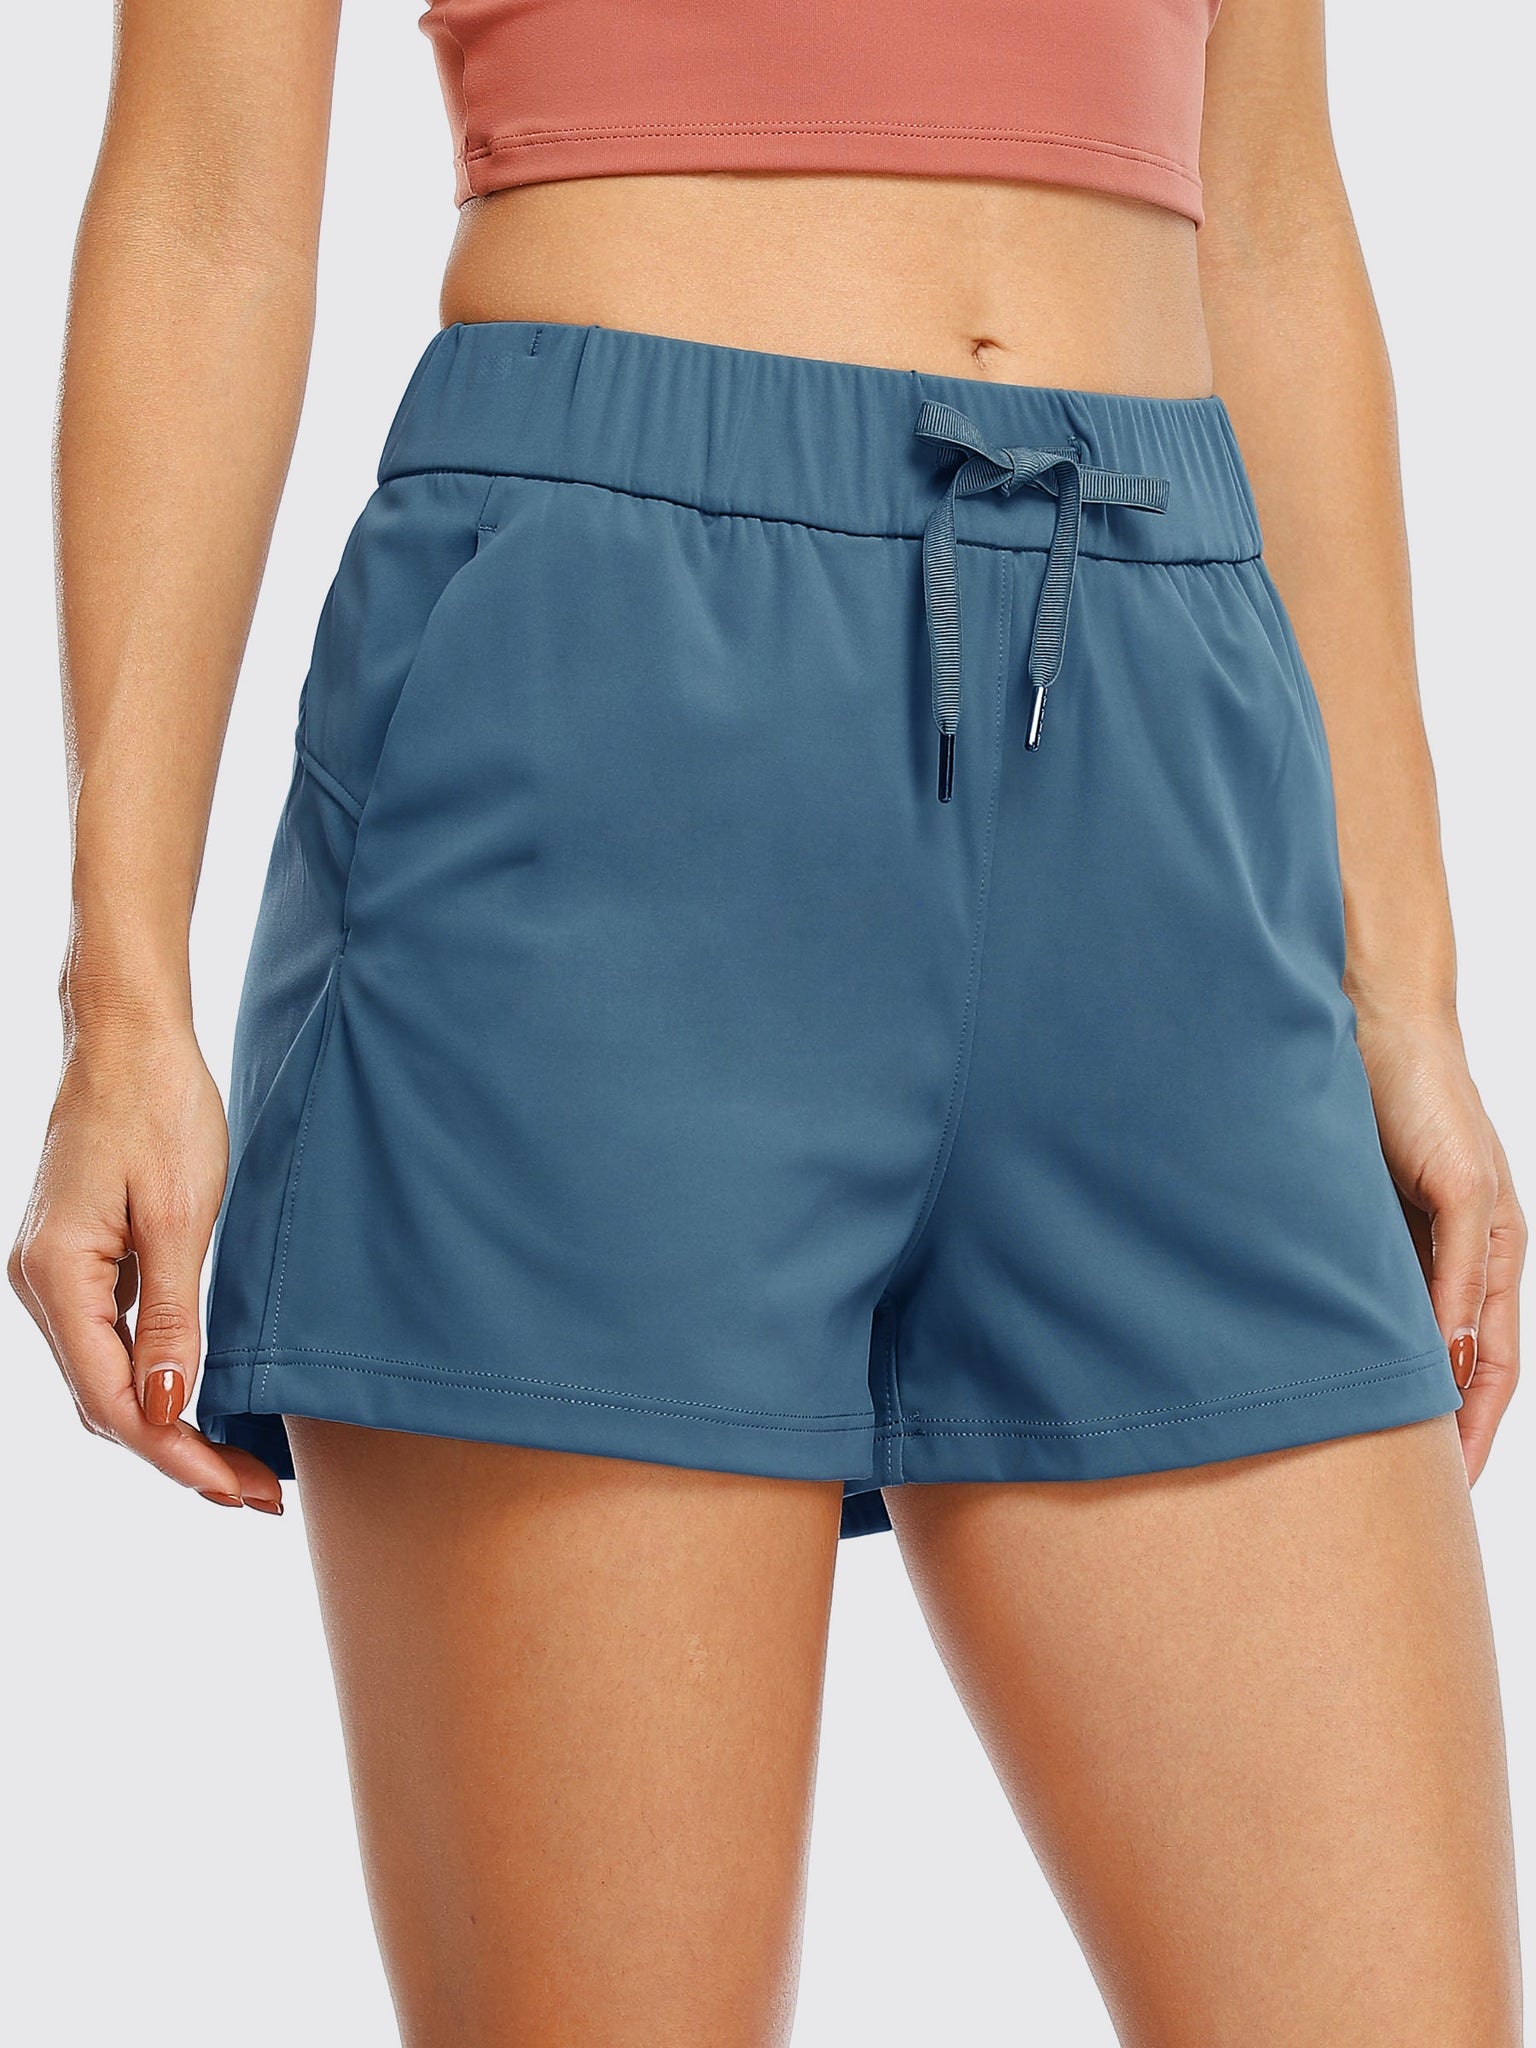 Willit Women's Summer 2.5 Inch Shorts_Blue3